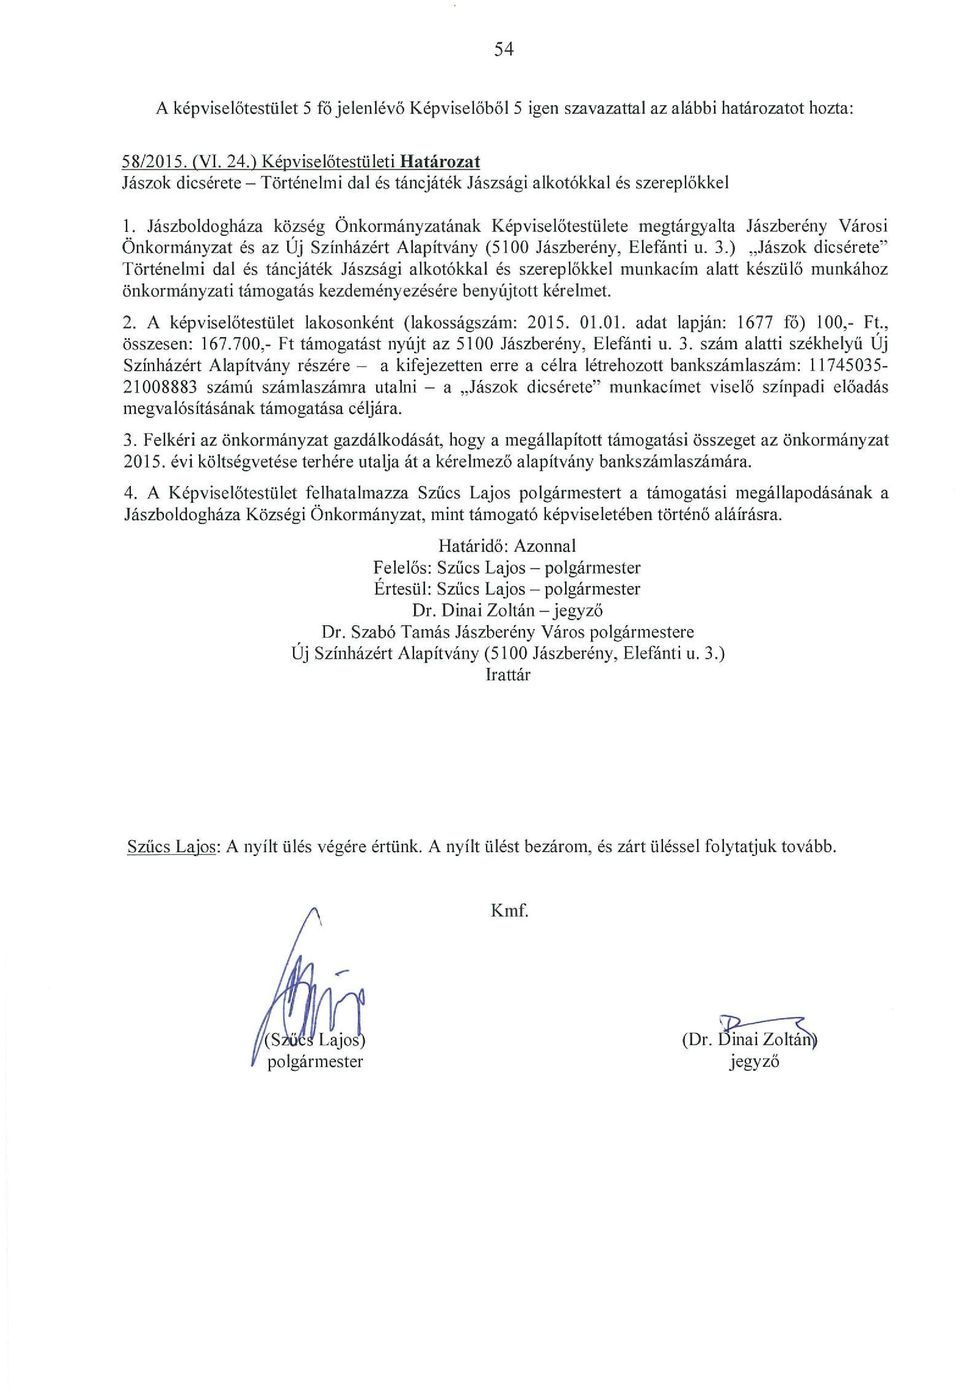 Jászboldogháza község Önkormányzatának Képviselőtestülete megtárgyalta Jászberény Városi Önkormányzat és az Uj Színházért Alapítvány (5100 Jászberény, Elefánti u. 3.